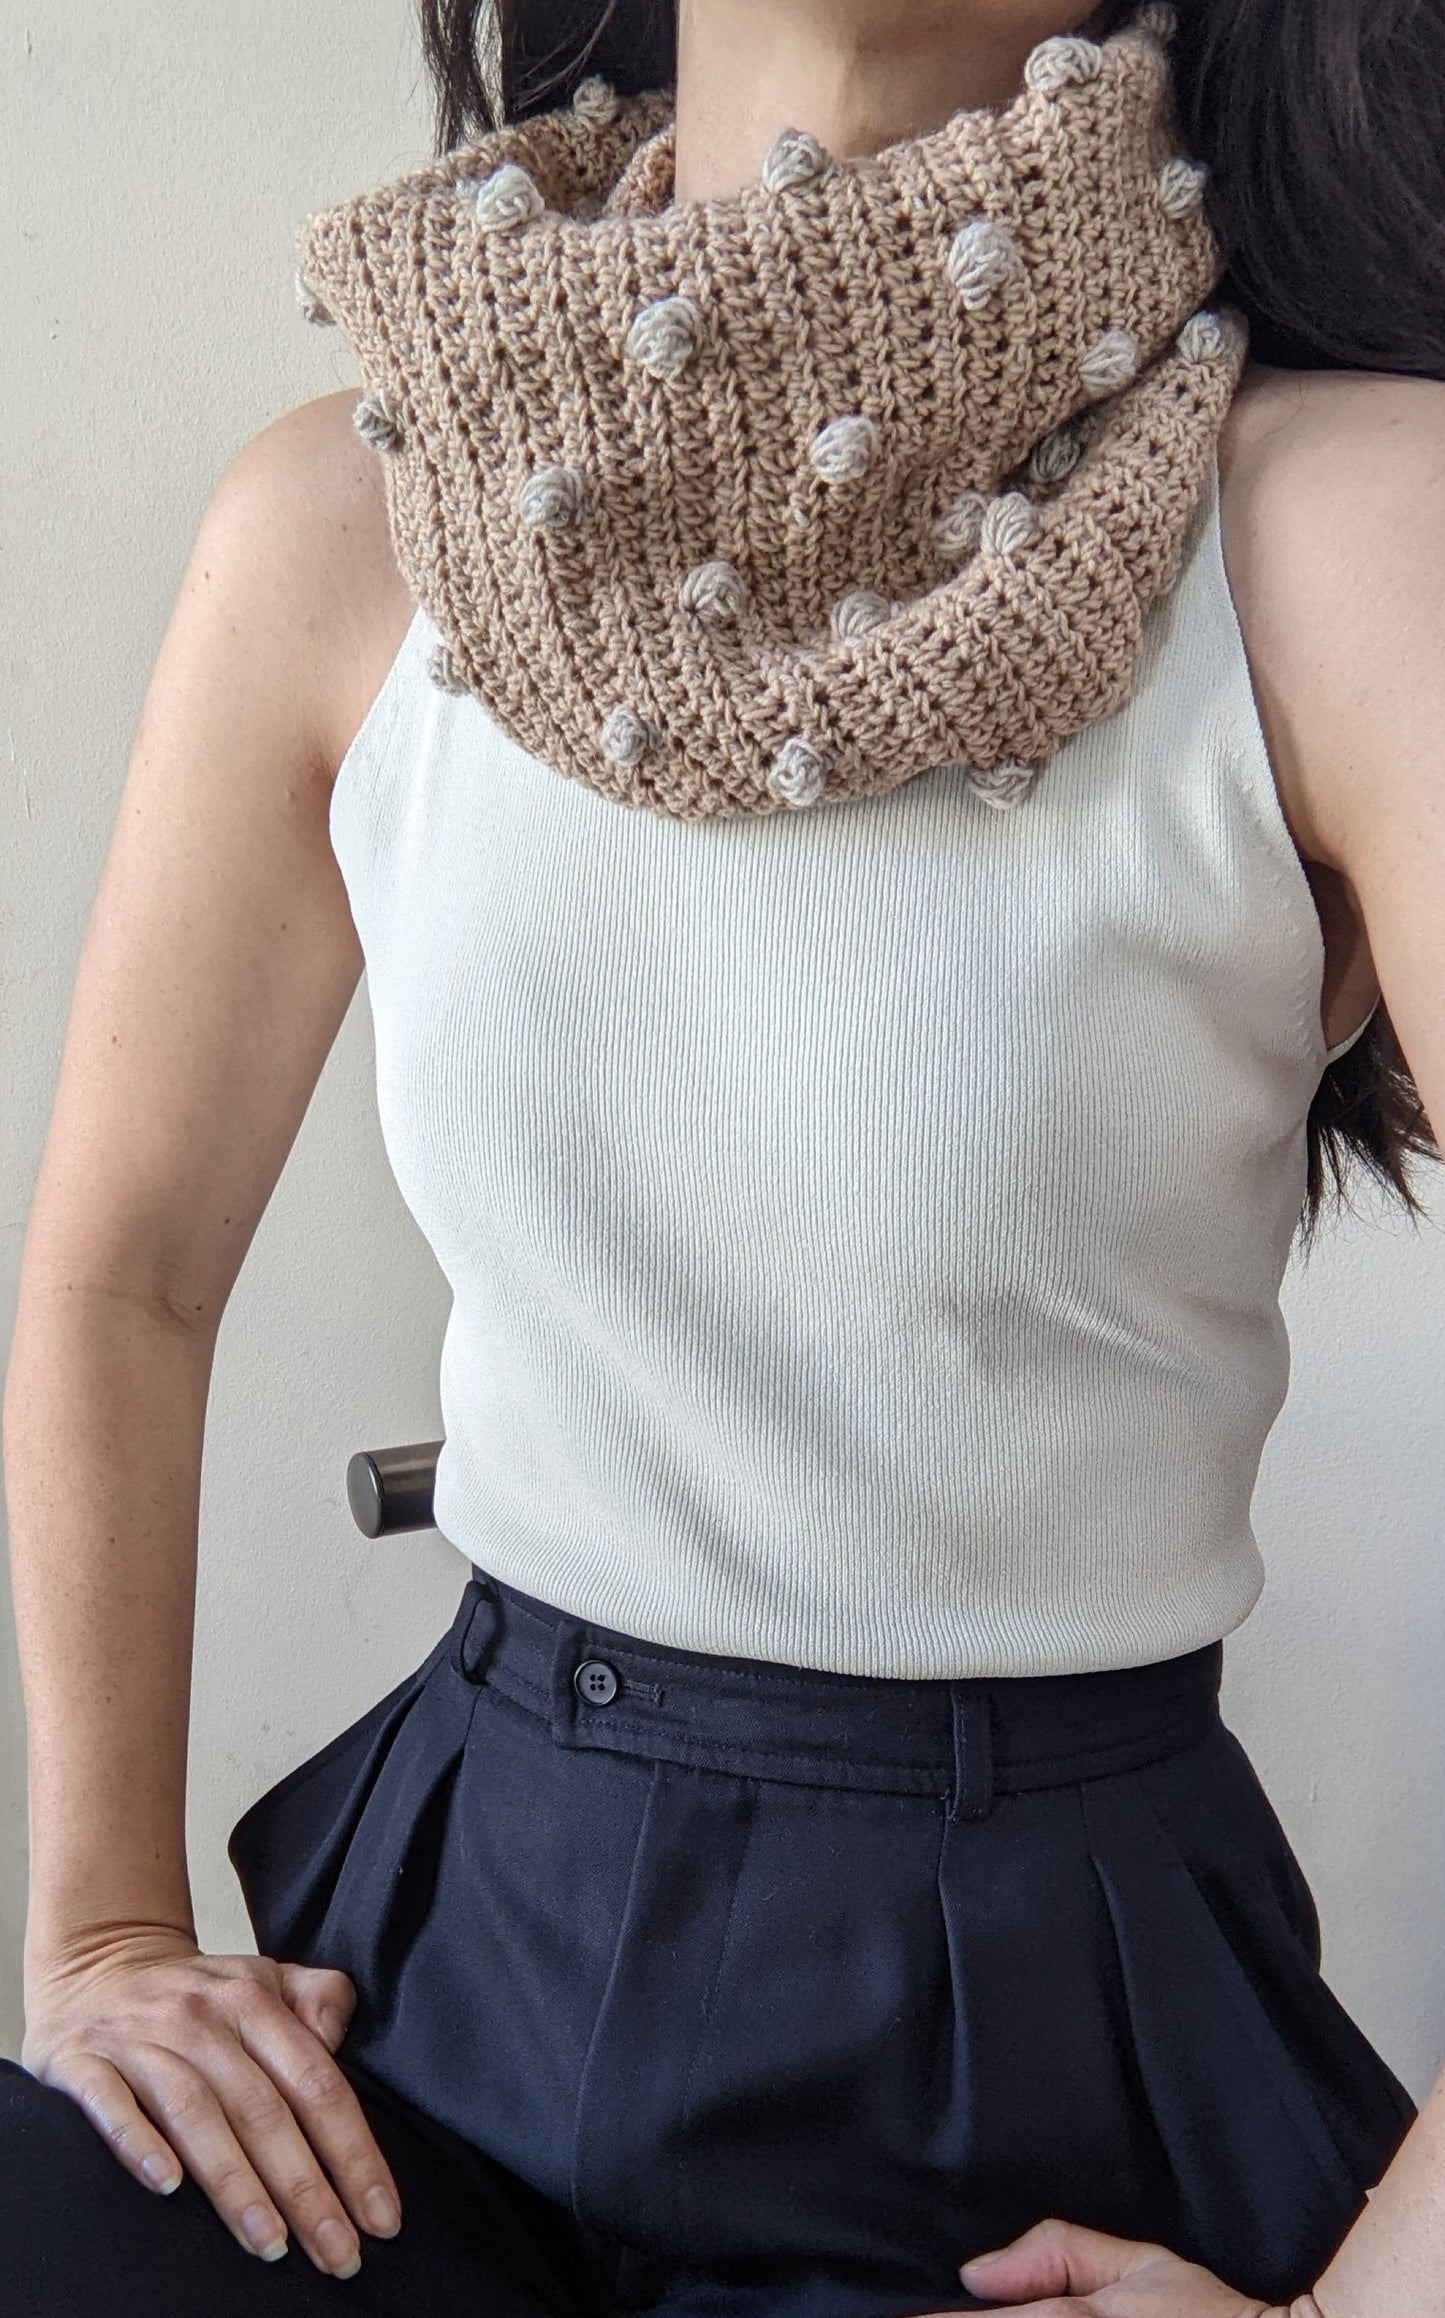 Crochet pattern PDF: Pecas Cowl